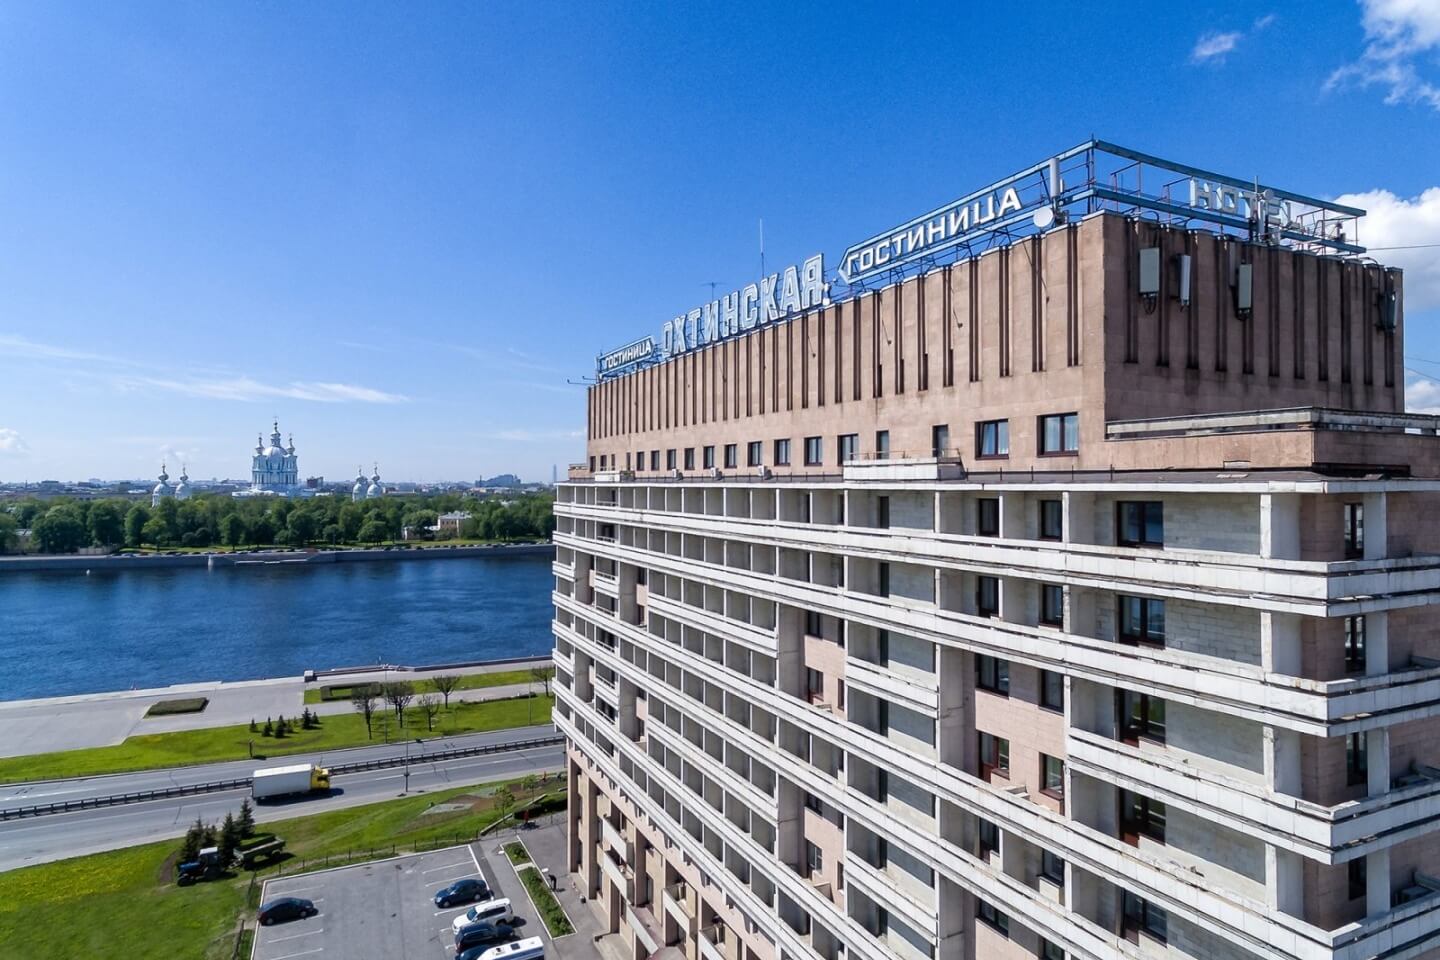 Здание гостиницы - пример советской архитектуры.